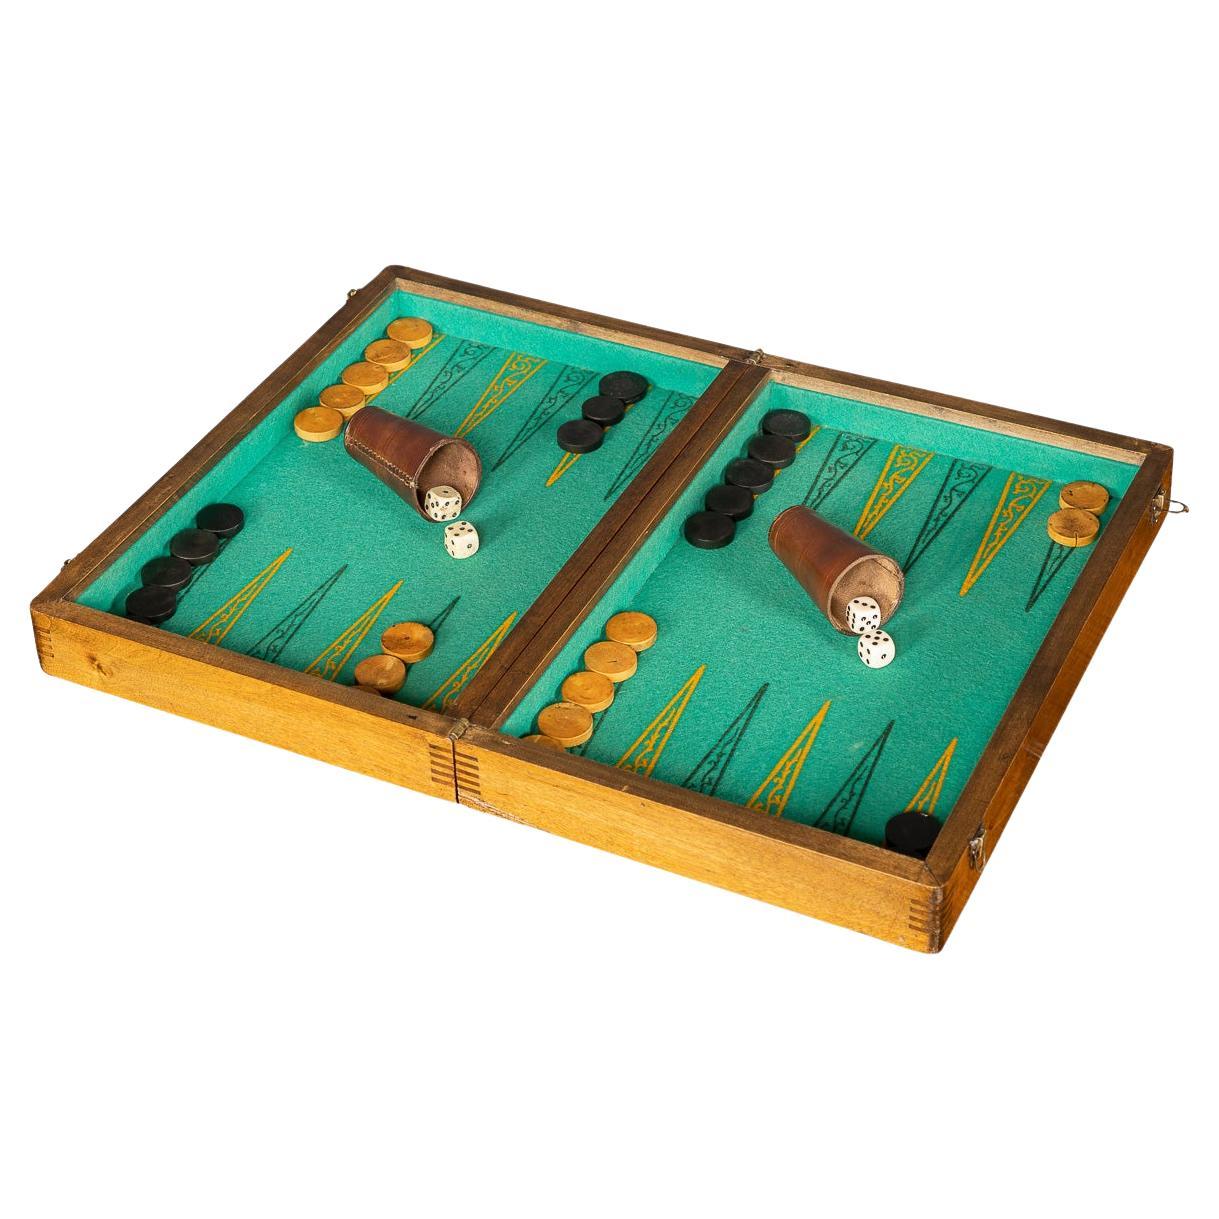 Boîte de jeu de backgammon et de dessins britannique du 20ème siècle, vers 1950